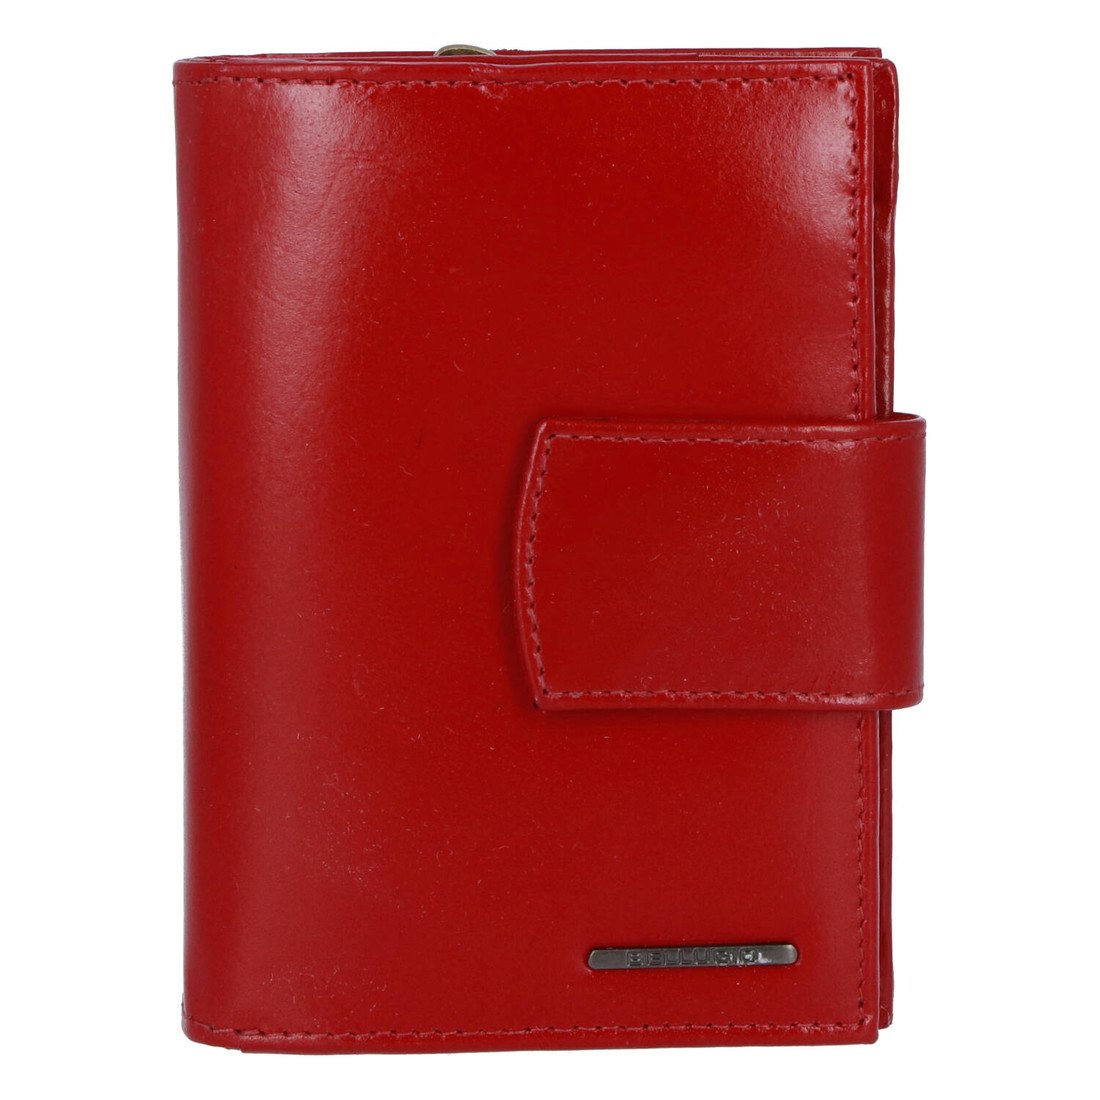 Pěkná dámská kožená peněženka Sindy, červená